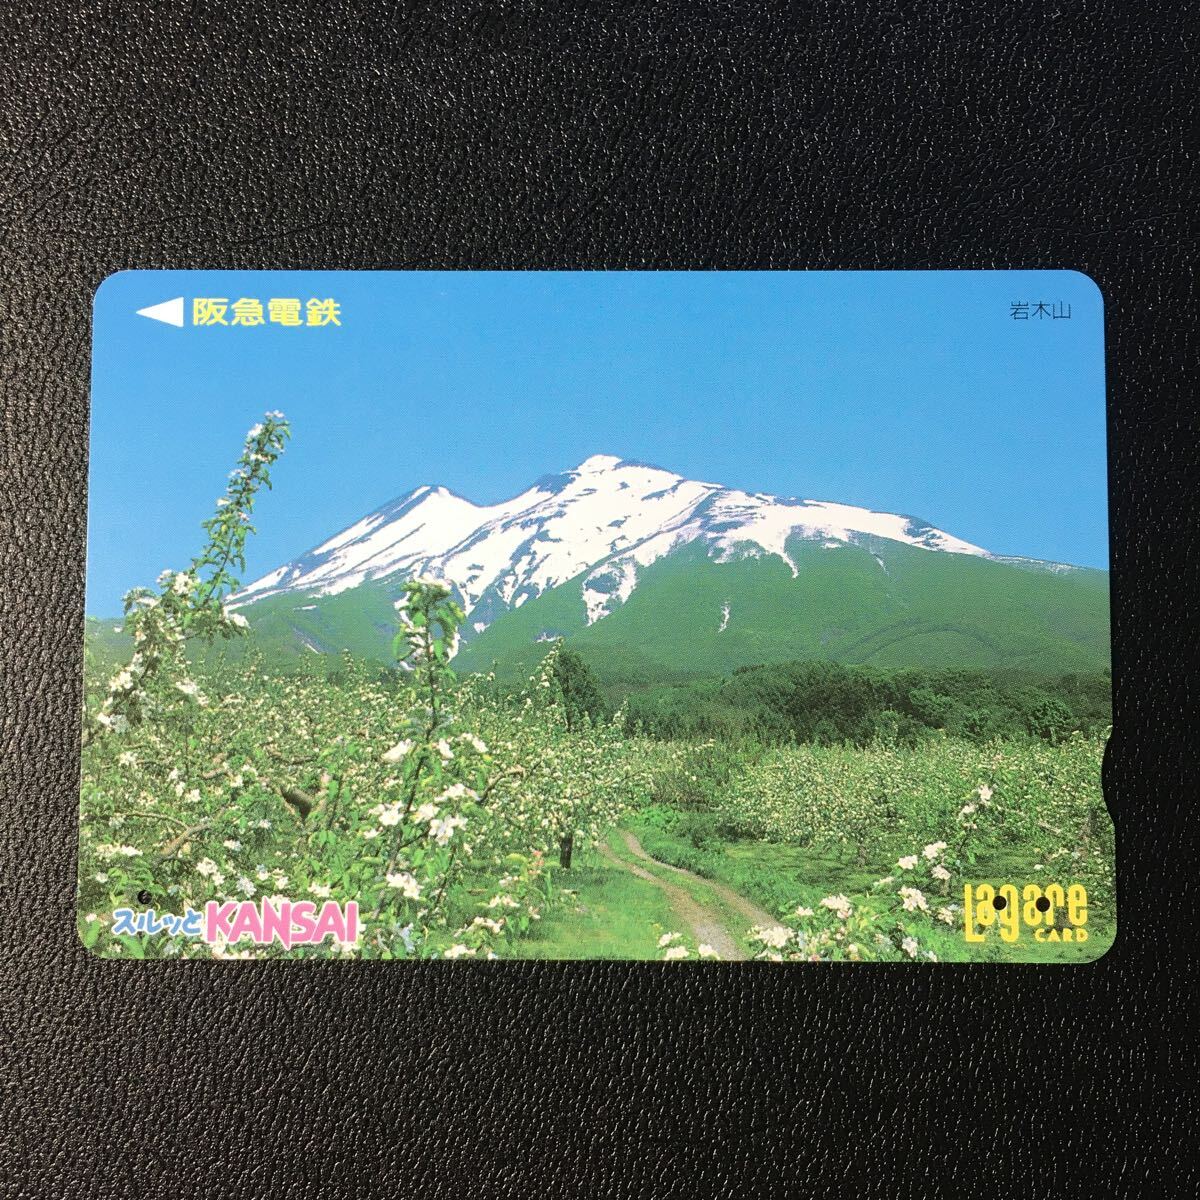 1999年5月1日発売柄ー日本の風景シリーズ「岩木山」後年再販版ー阪急ラガールカード(使用済スルッとKANSAI)_画像1